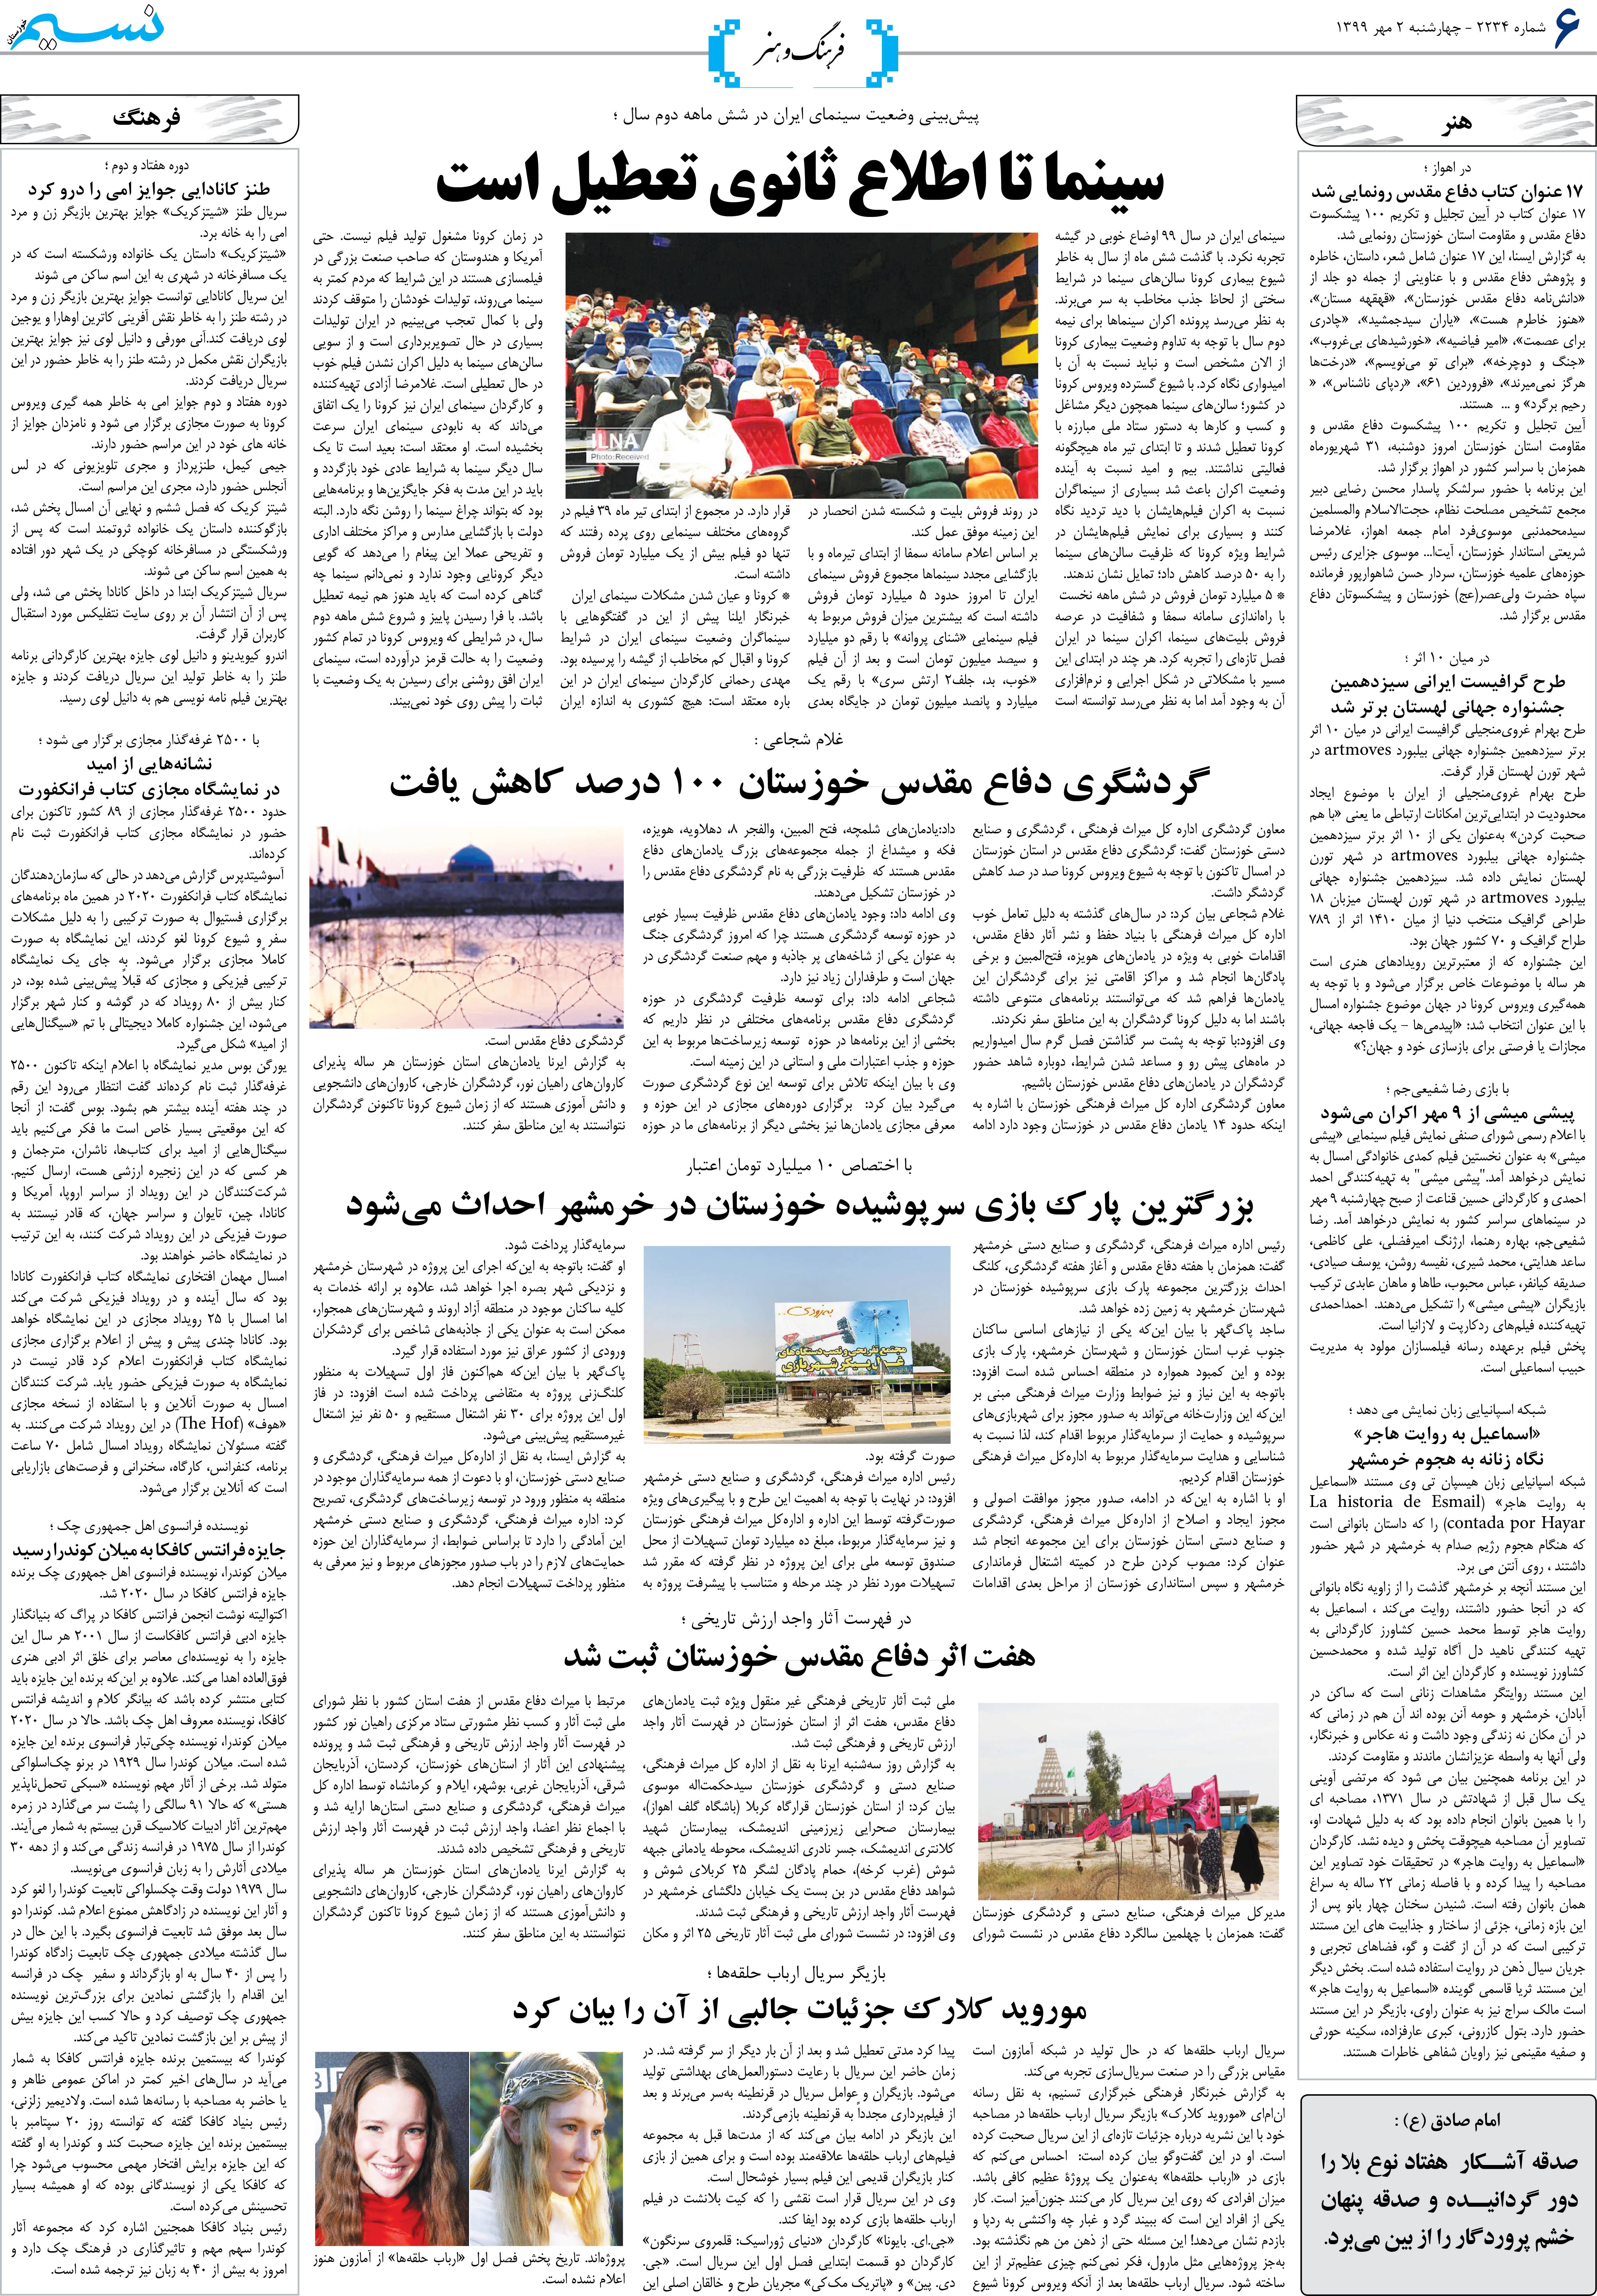 صفحه فرهنگ و هنر روزنامه نسیم شماره 2234